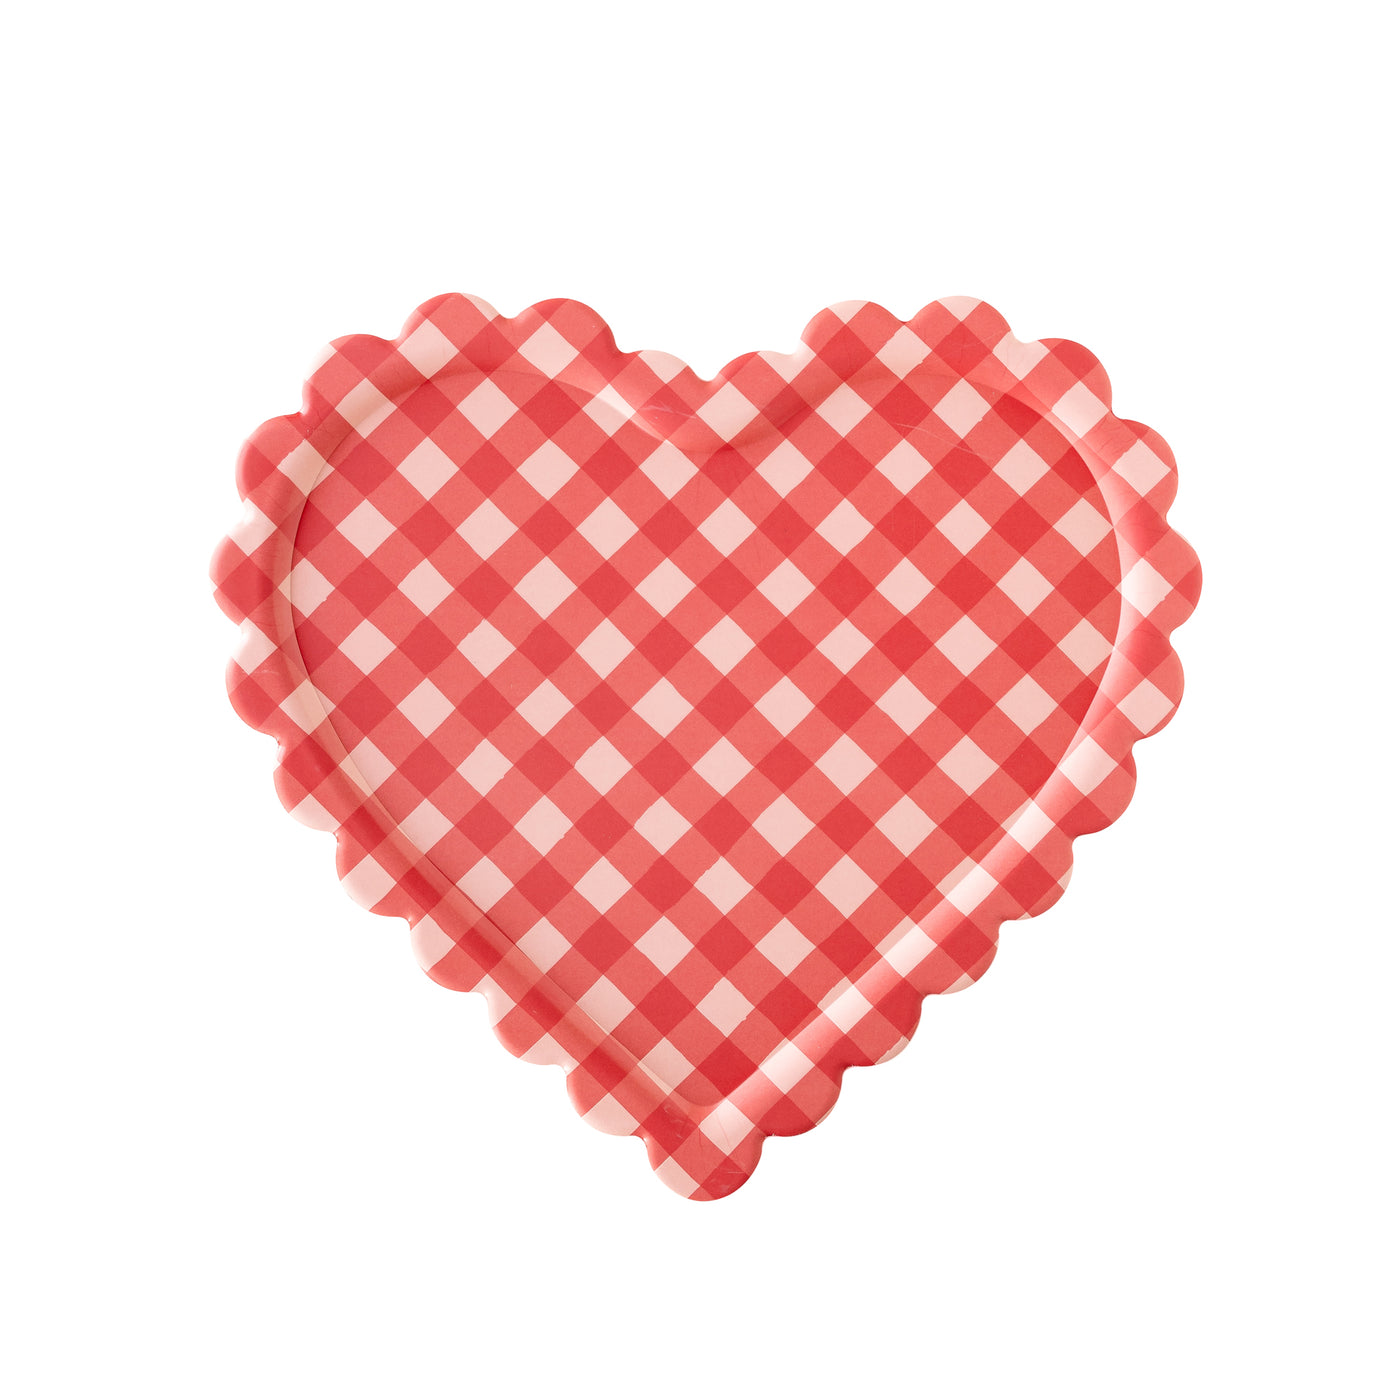 VAL1028 - Checkered Heart Shaped Tray